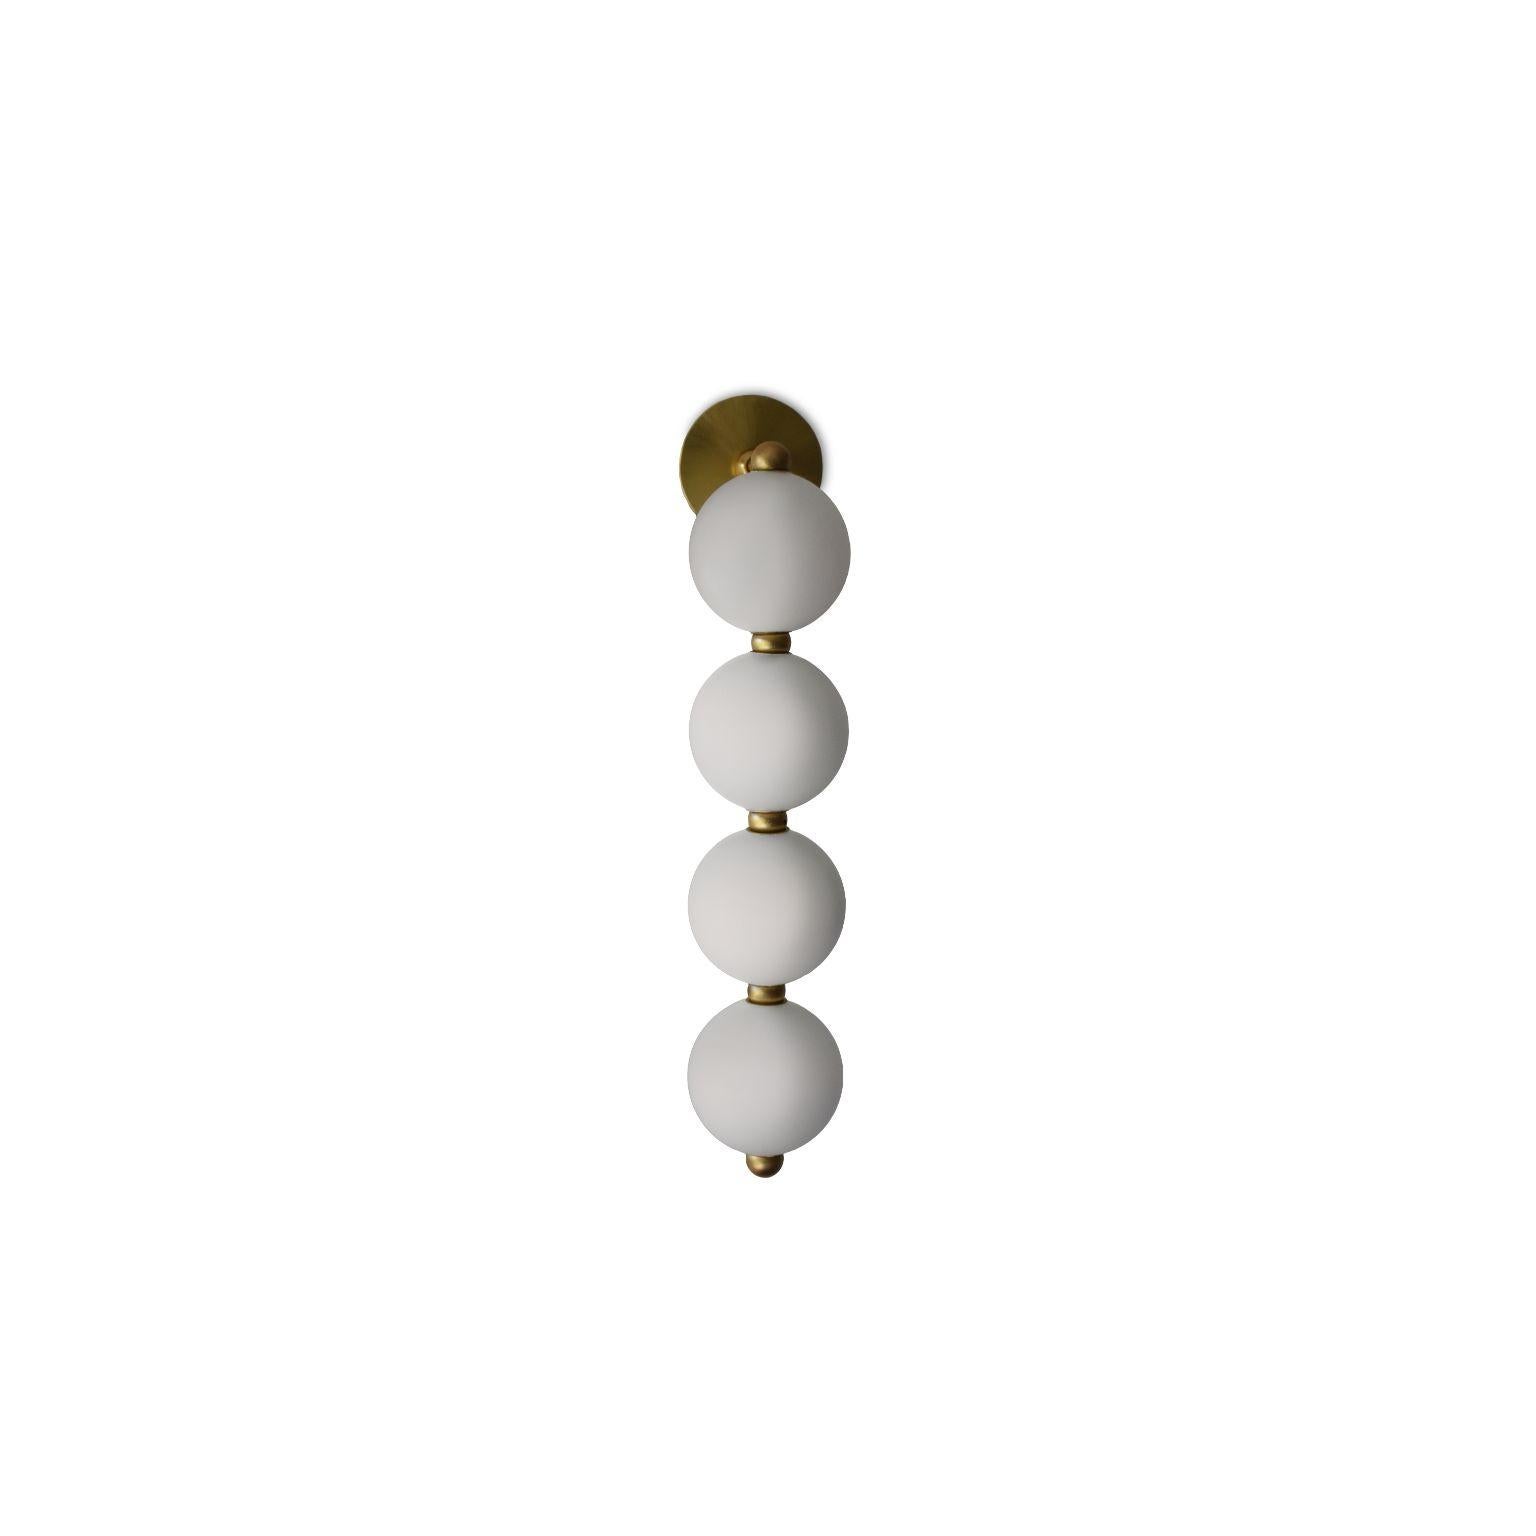 Lustre Ronde de Perles de Ludovic Clément D'armont
Dimensions : H 52 x L 17x 10 cm
4 Perles 10cm
Matériaux : Verre soufflé, laiton, DEL
Disponible également en différentes dimensions.

Toutes nos lampes peuvent être câblées en fonction de chaque